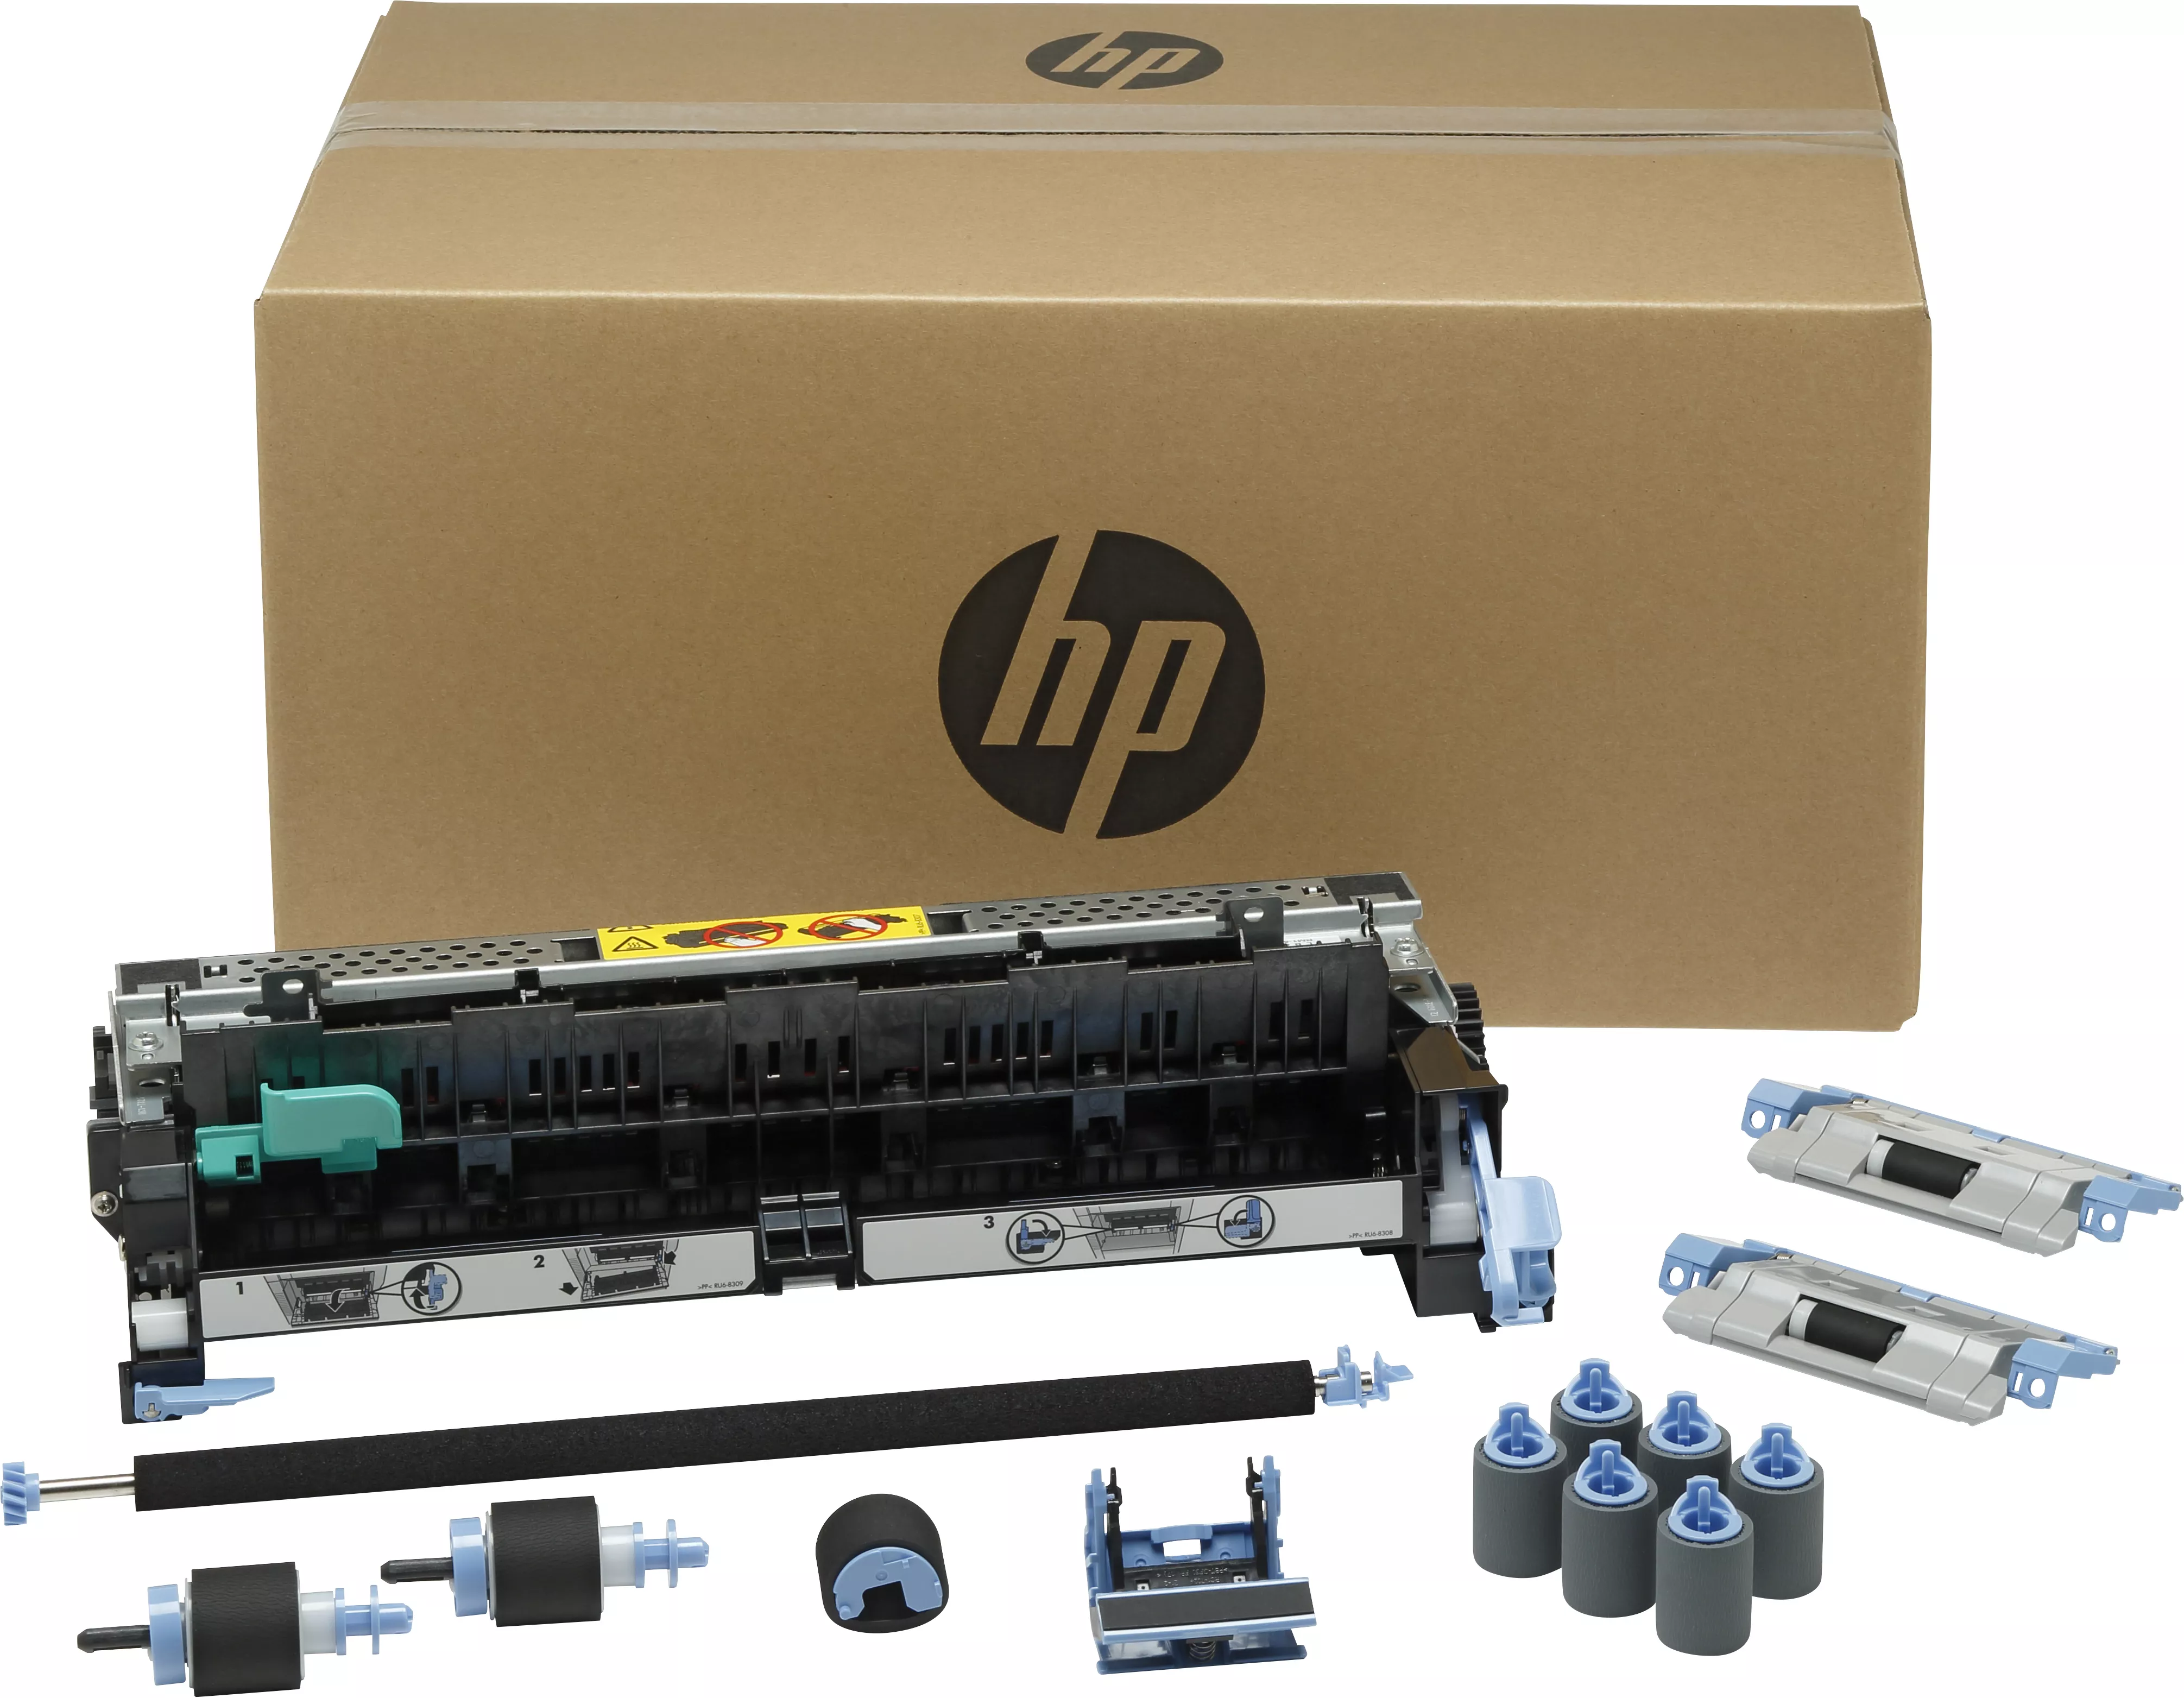 Achat HP original M712/M725 maintenance kit CF254A 220V et autres produits de la marque HP